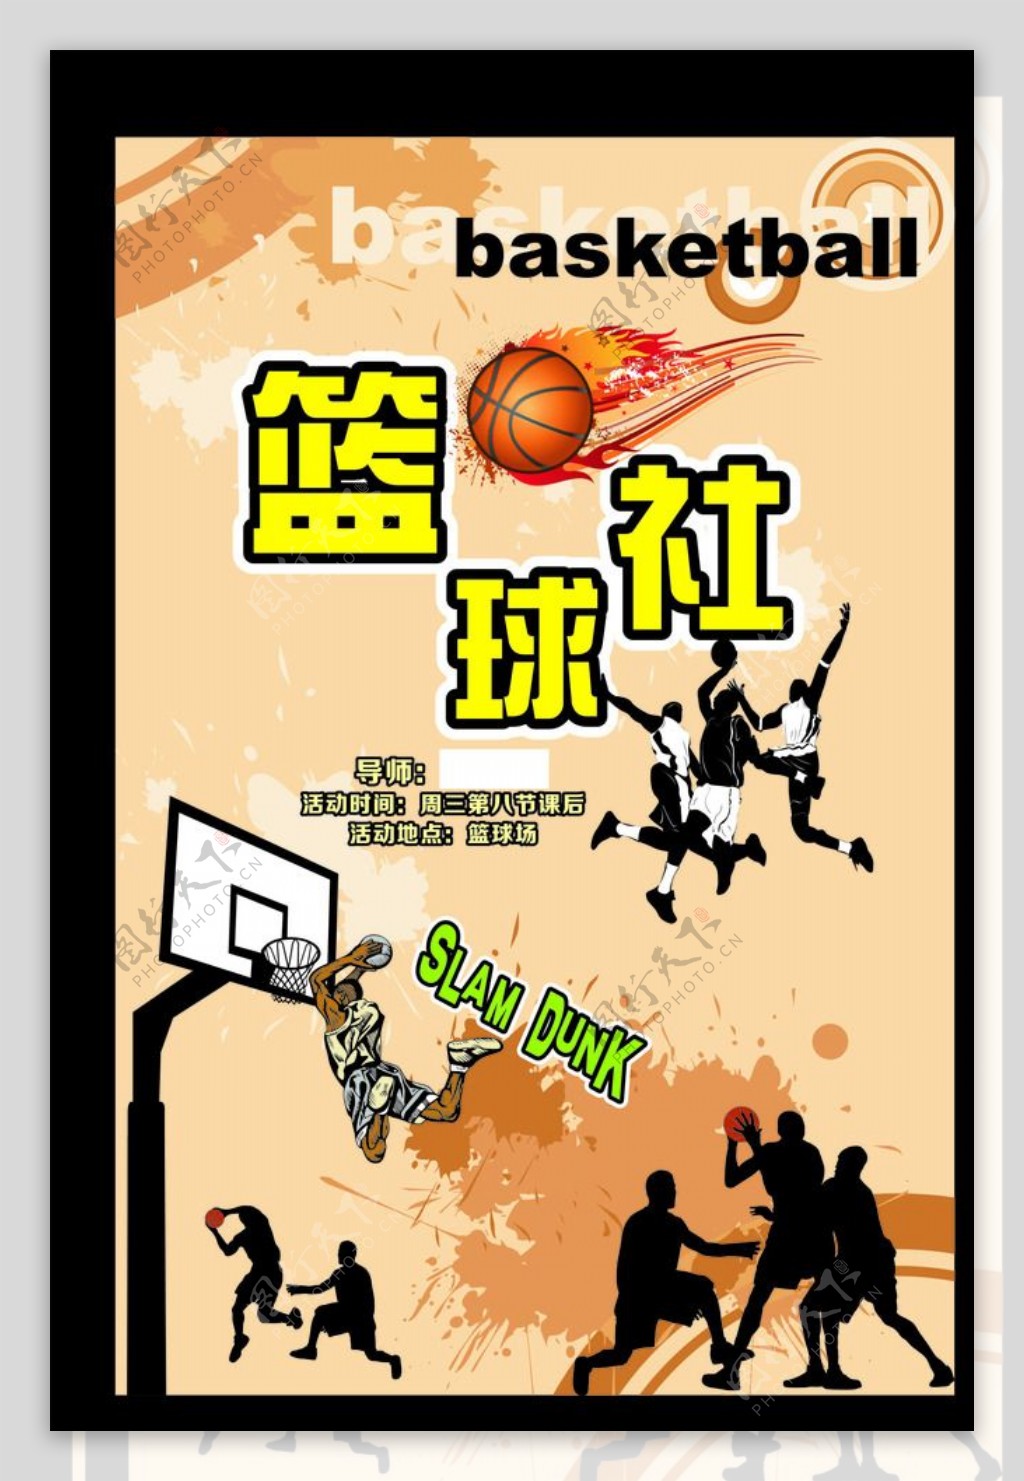 学校社团招新篮球社图片